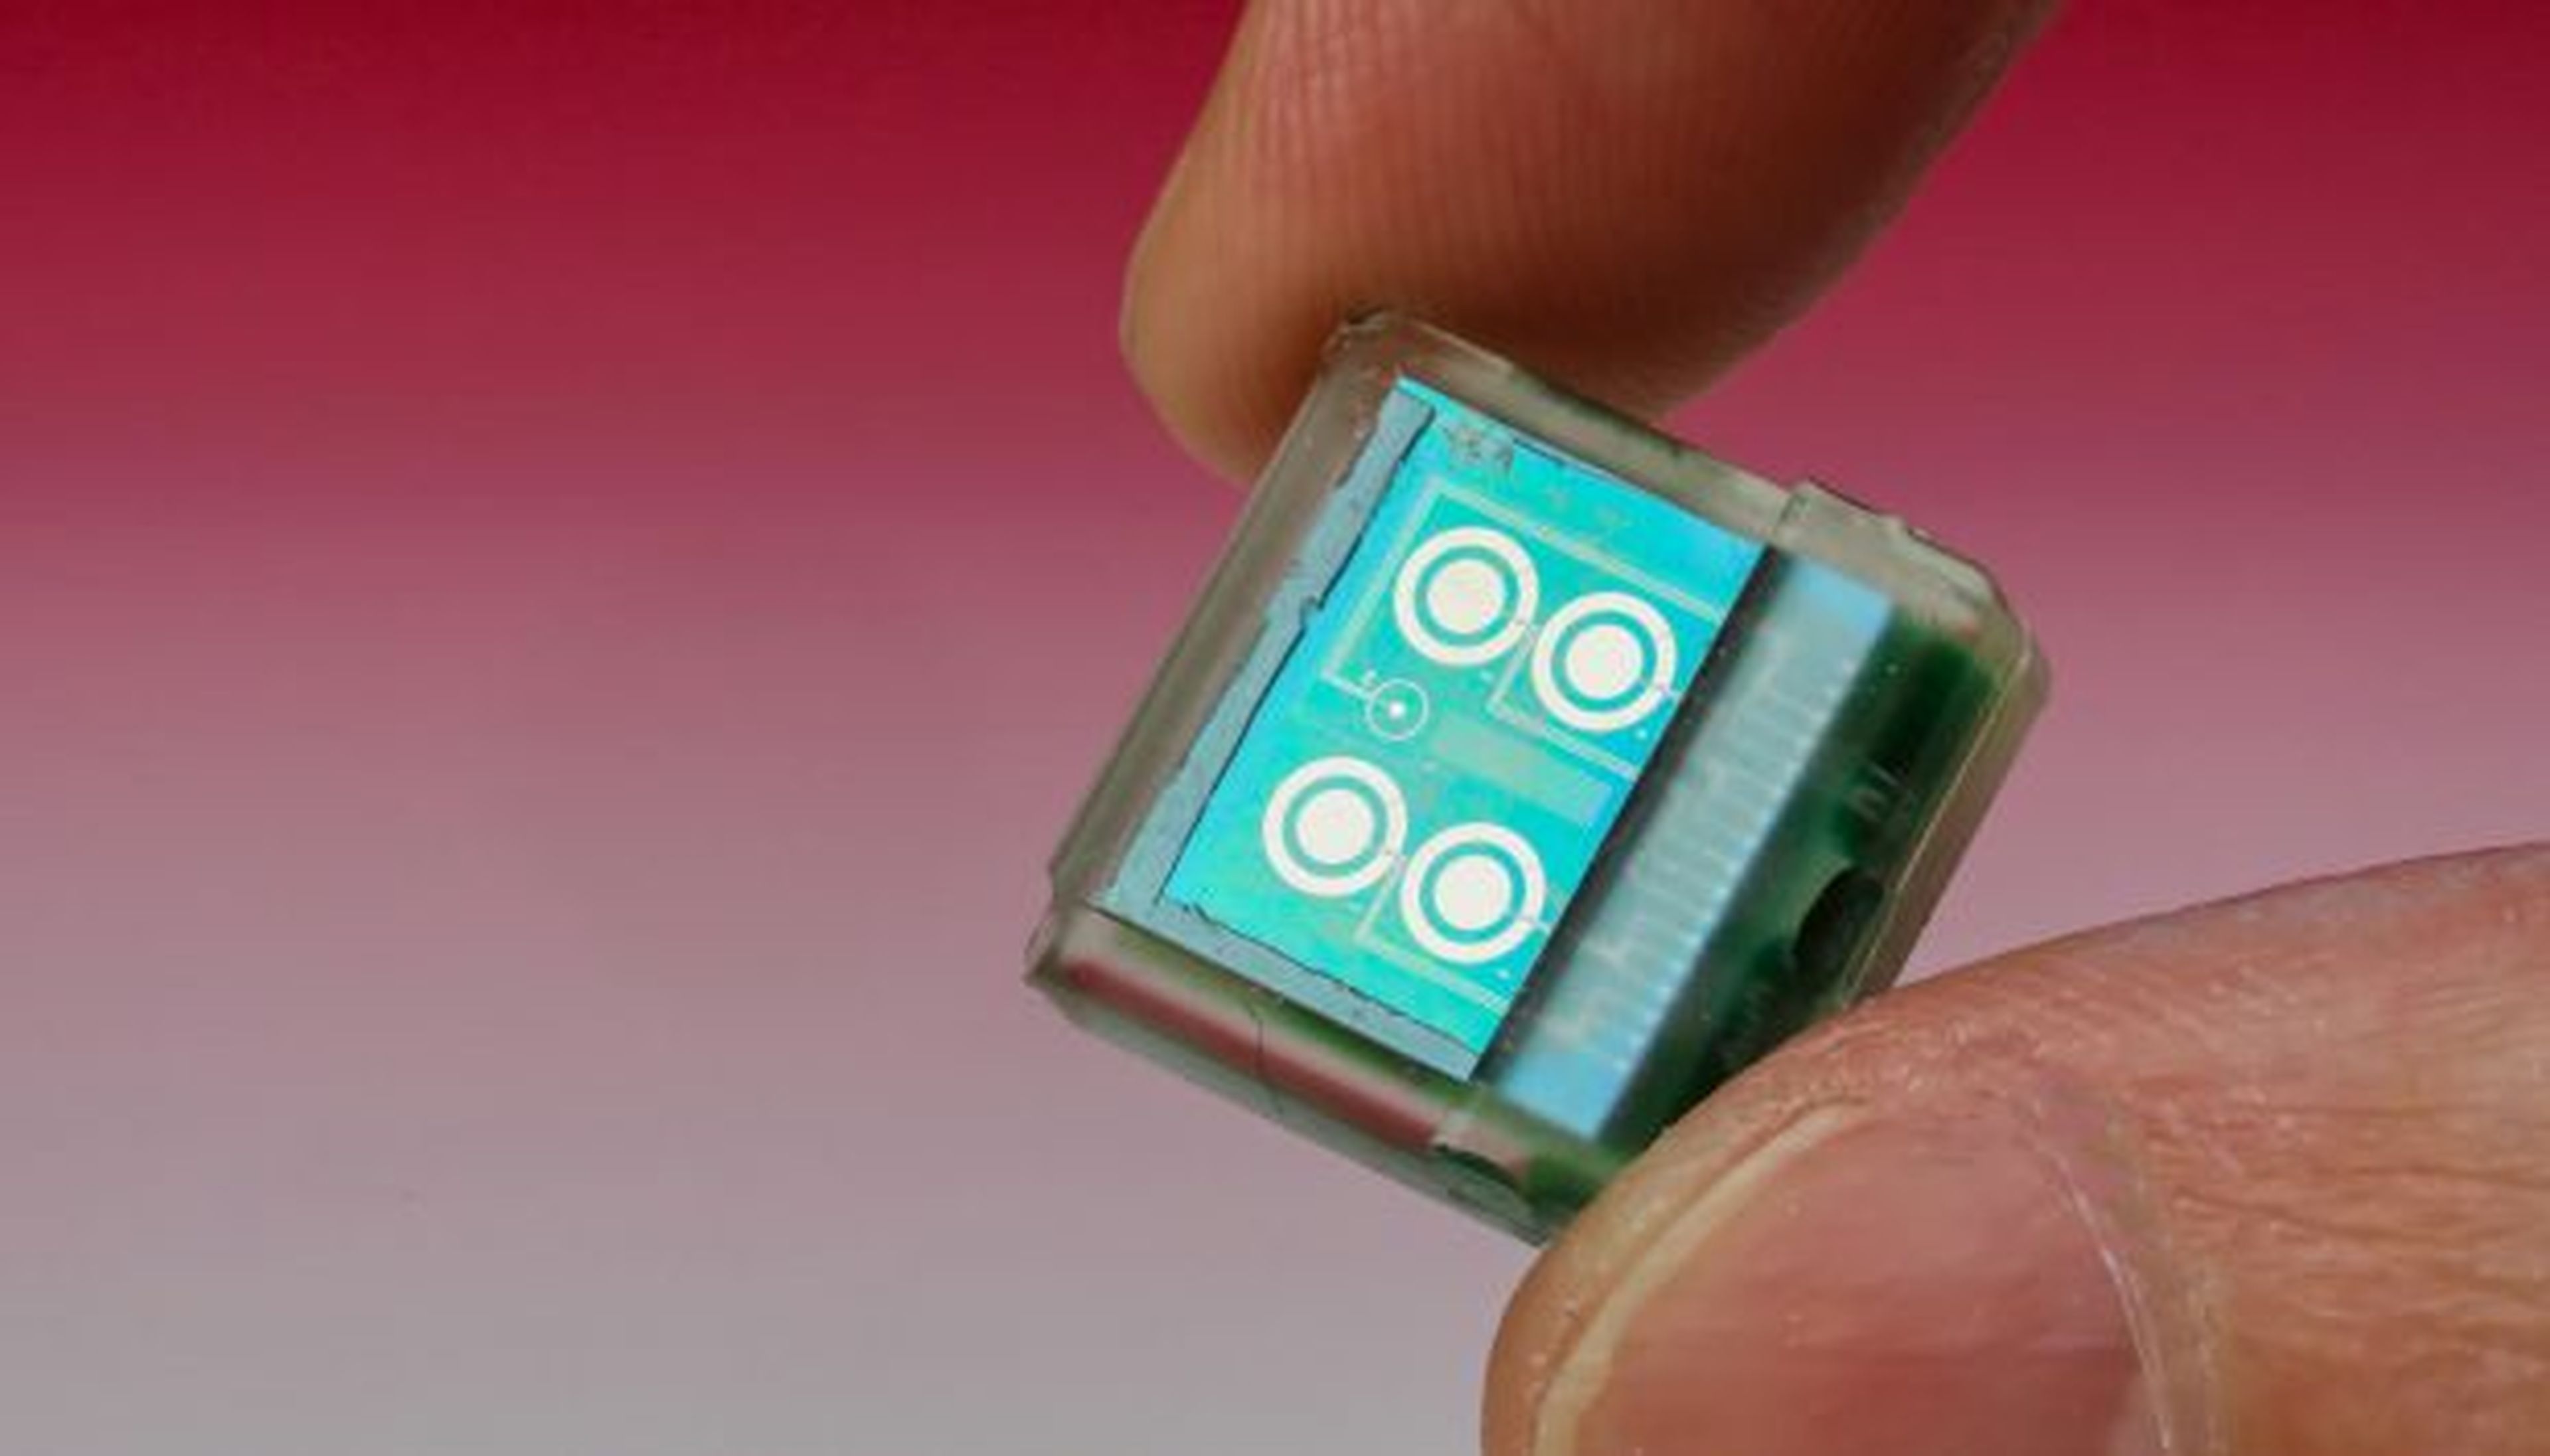 Este chip permite controlar los datos biomédicos a través del móvil